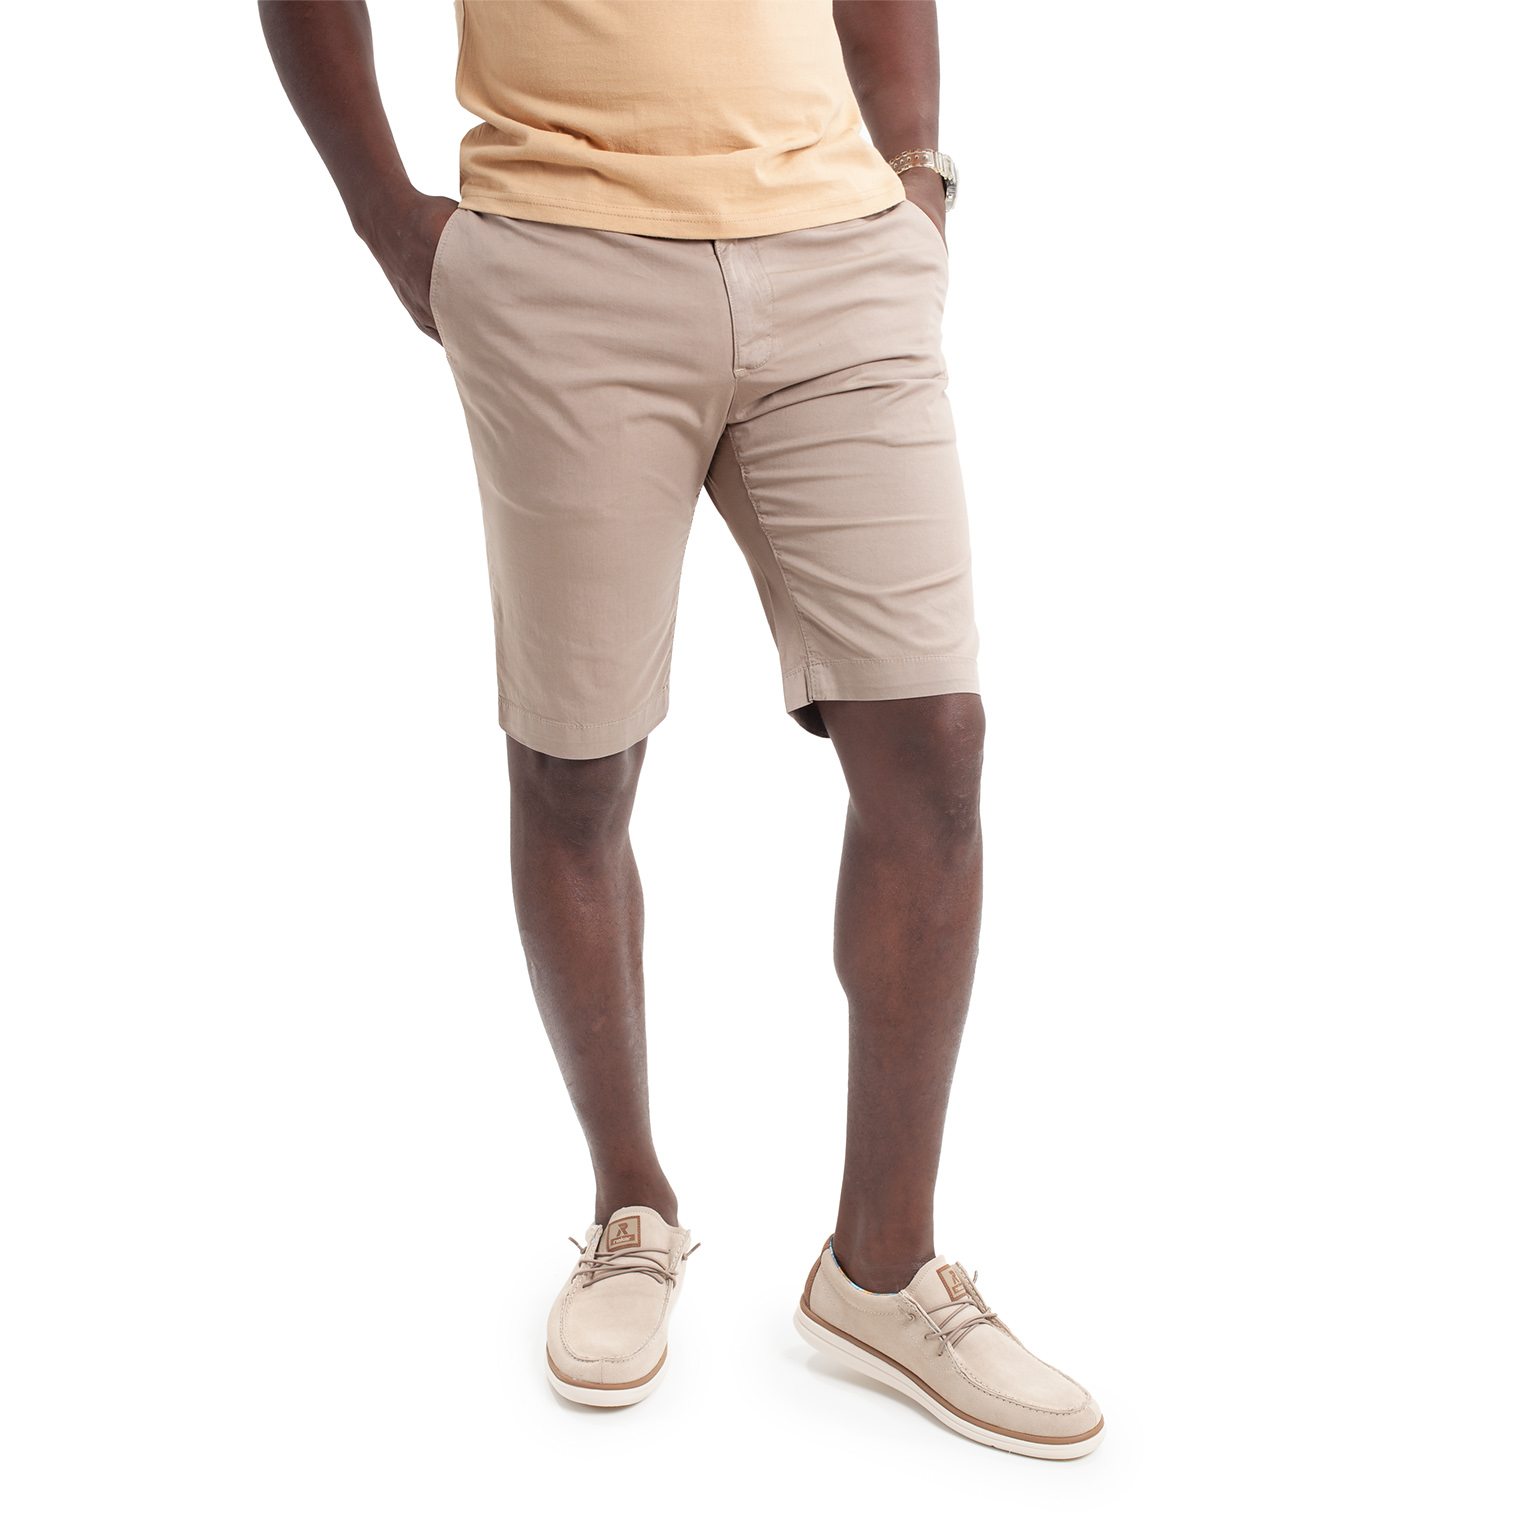 Pantalón corto de hombre en colores tipo chino, en tejido de algodón y lycra. Línea Regular Fit.